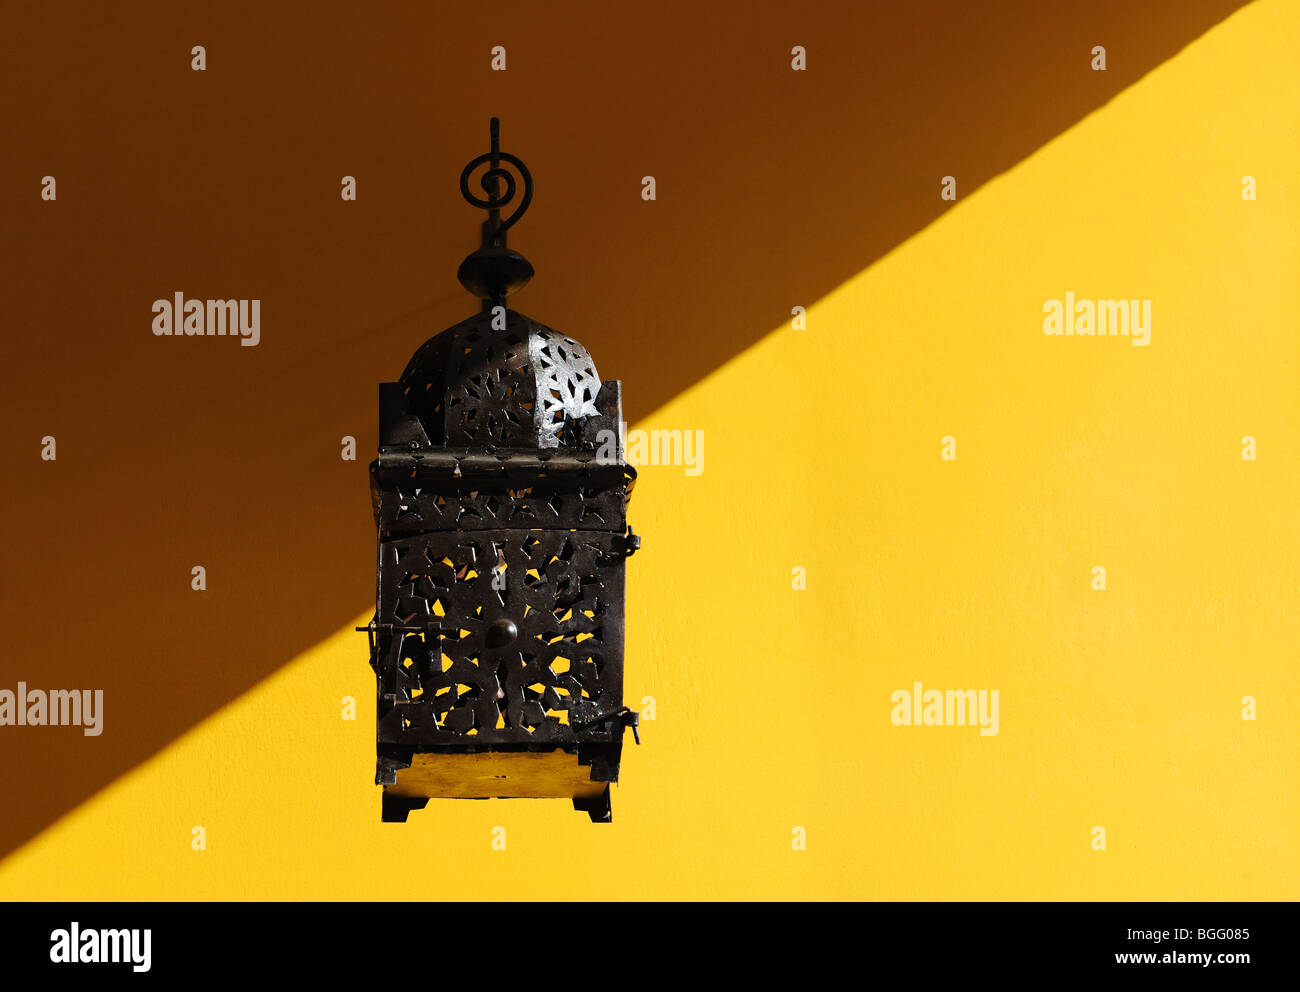 Lantern on a Yellow Wall Stock Photo